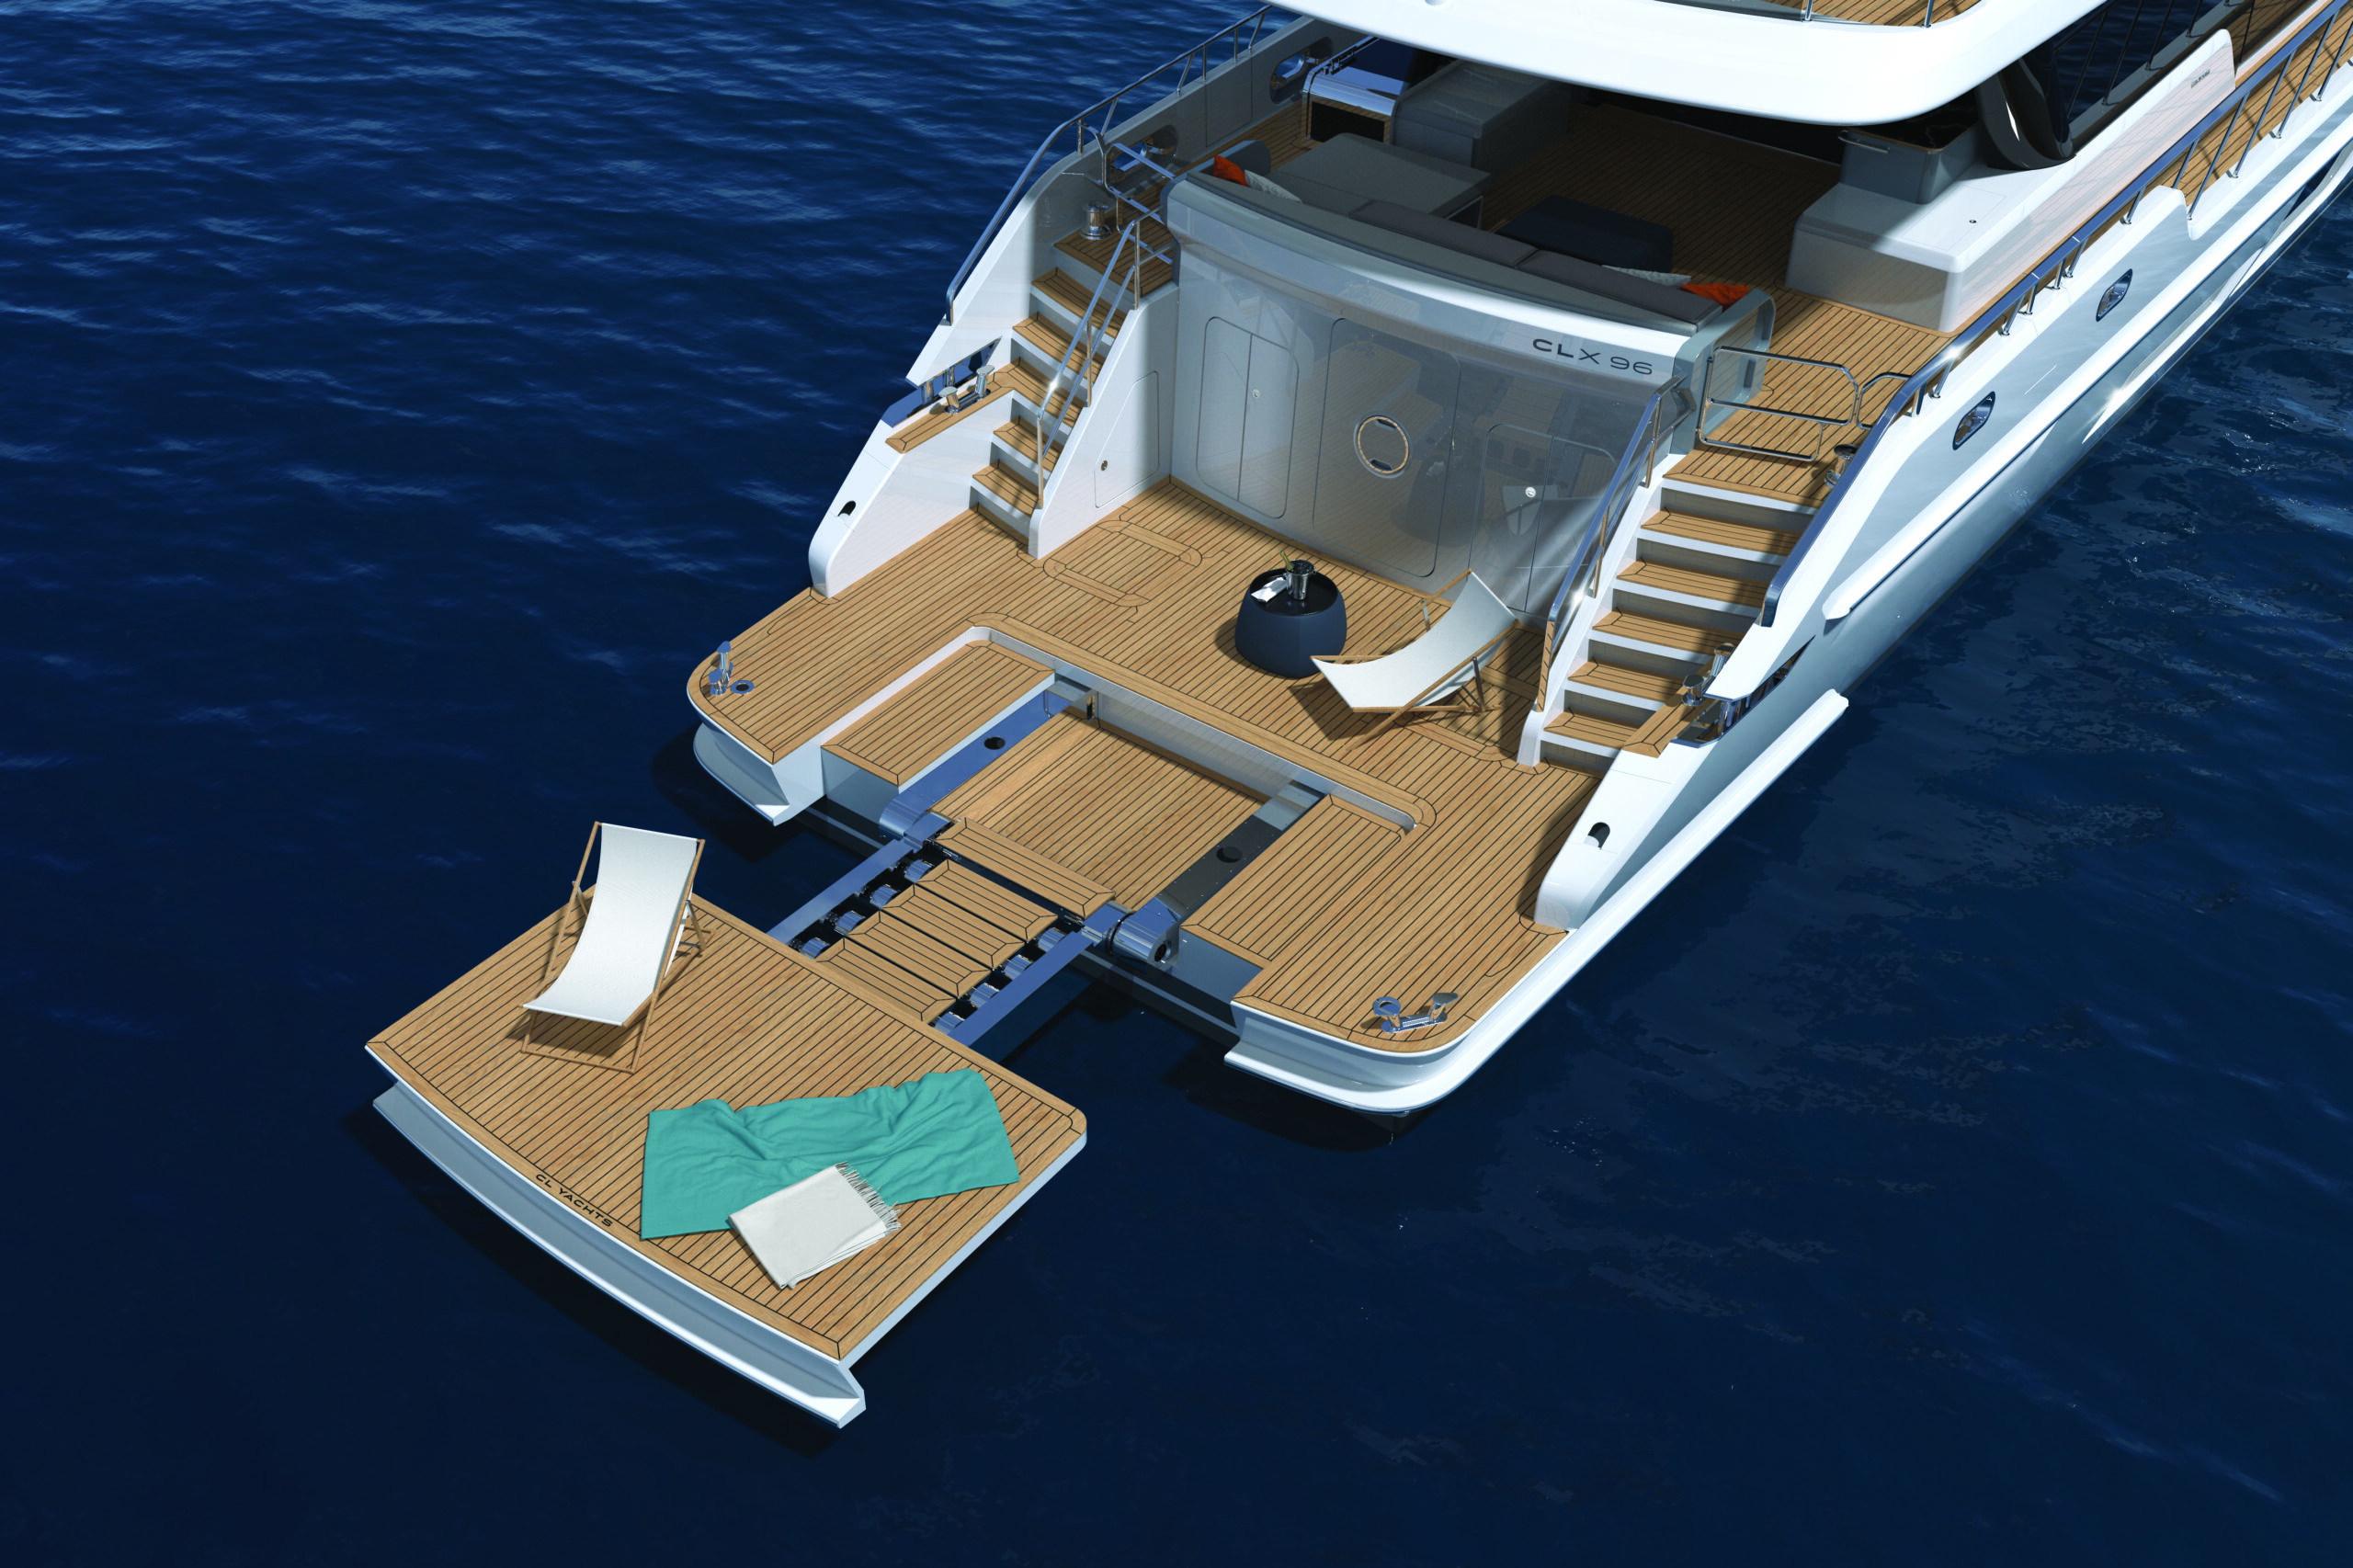 CL Yachts CLX96 rear aft deck